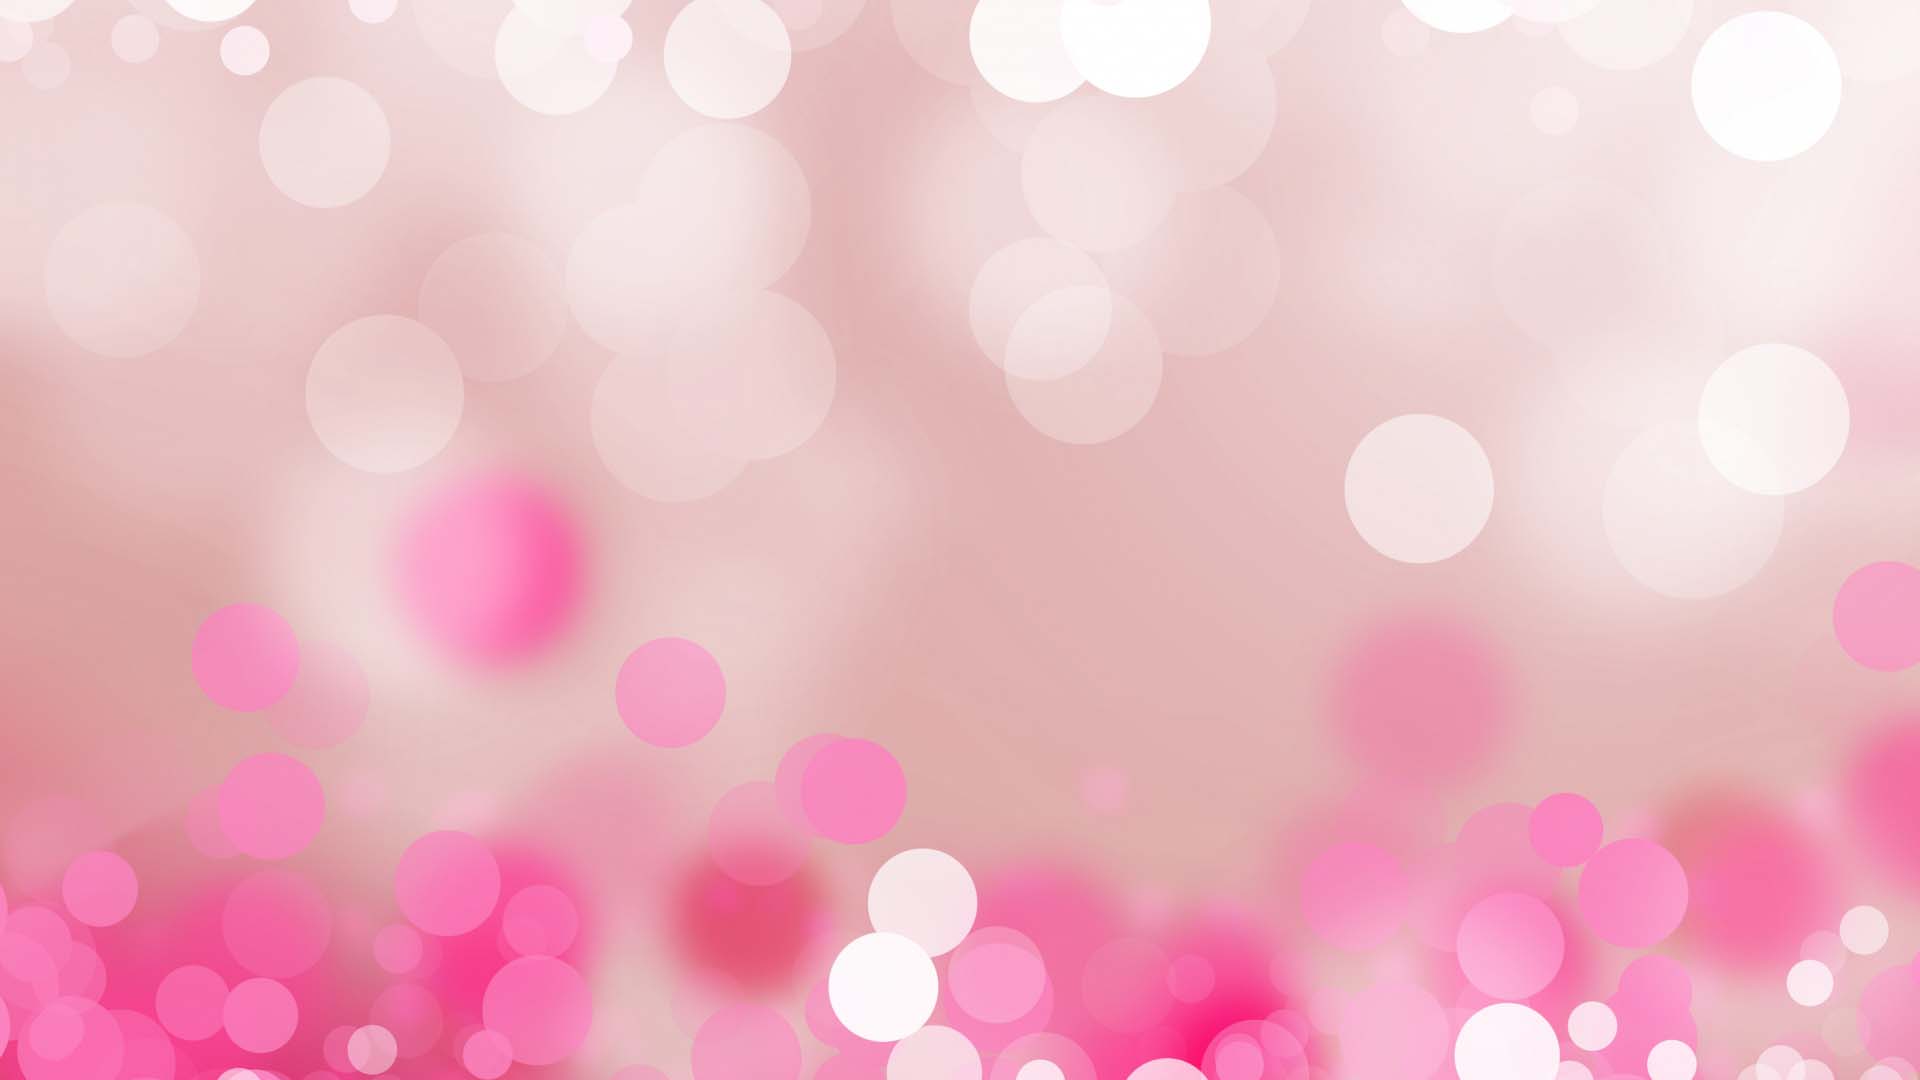 Hình nền, Dễ Thương, Màu Hồng: Những bức hình nền màu hồng nhẹ nhàng và dễ thương sẽ khiến không gian sống và làm việc của bạn trở nên sinh động hơn bao giờ hết. Với các họa tiết ngộ nghĩnh và đáng yêu, các mẫu hình nền này sẽ khiến bạn cảm thấy thật vui vẻ và thoải mái. Hãy trang trí cho mình một bức hình nền màu hồng dễ thương ngay hôm nay!